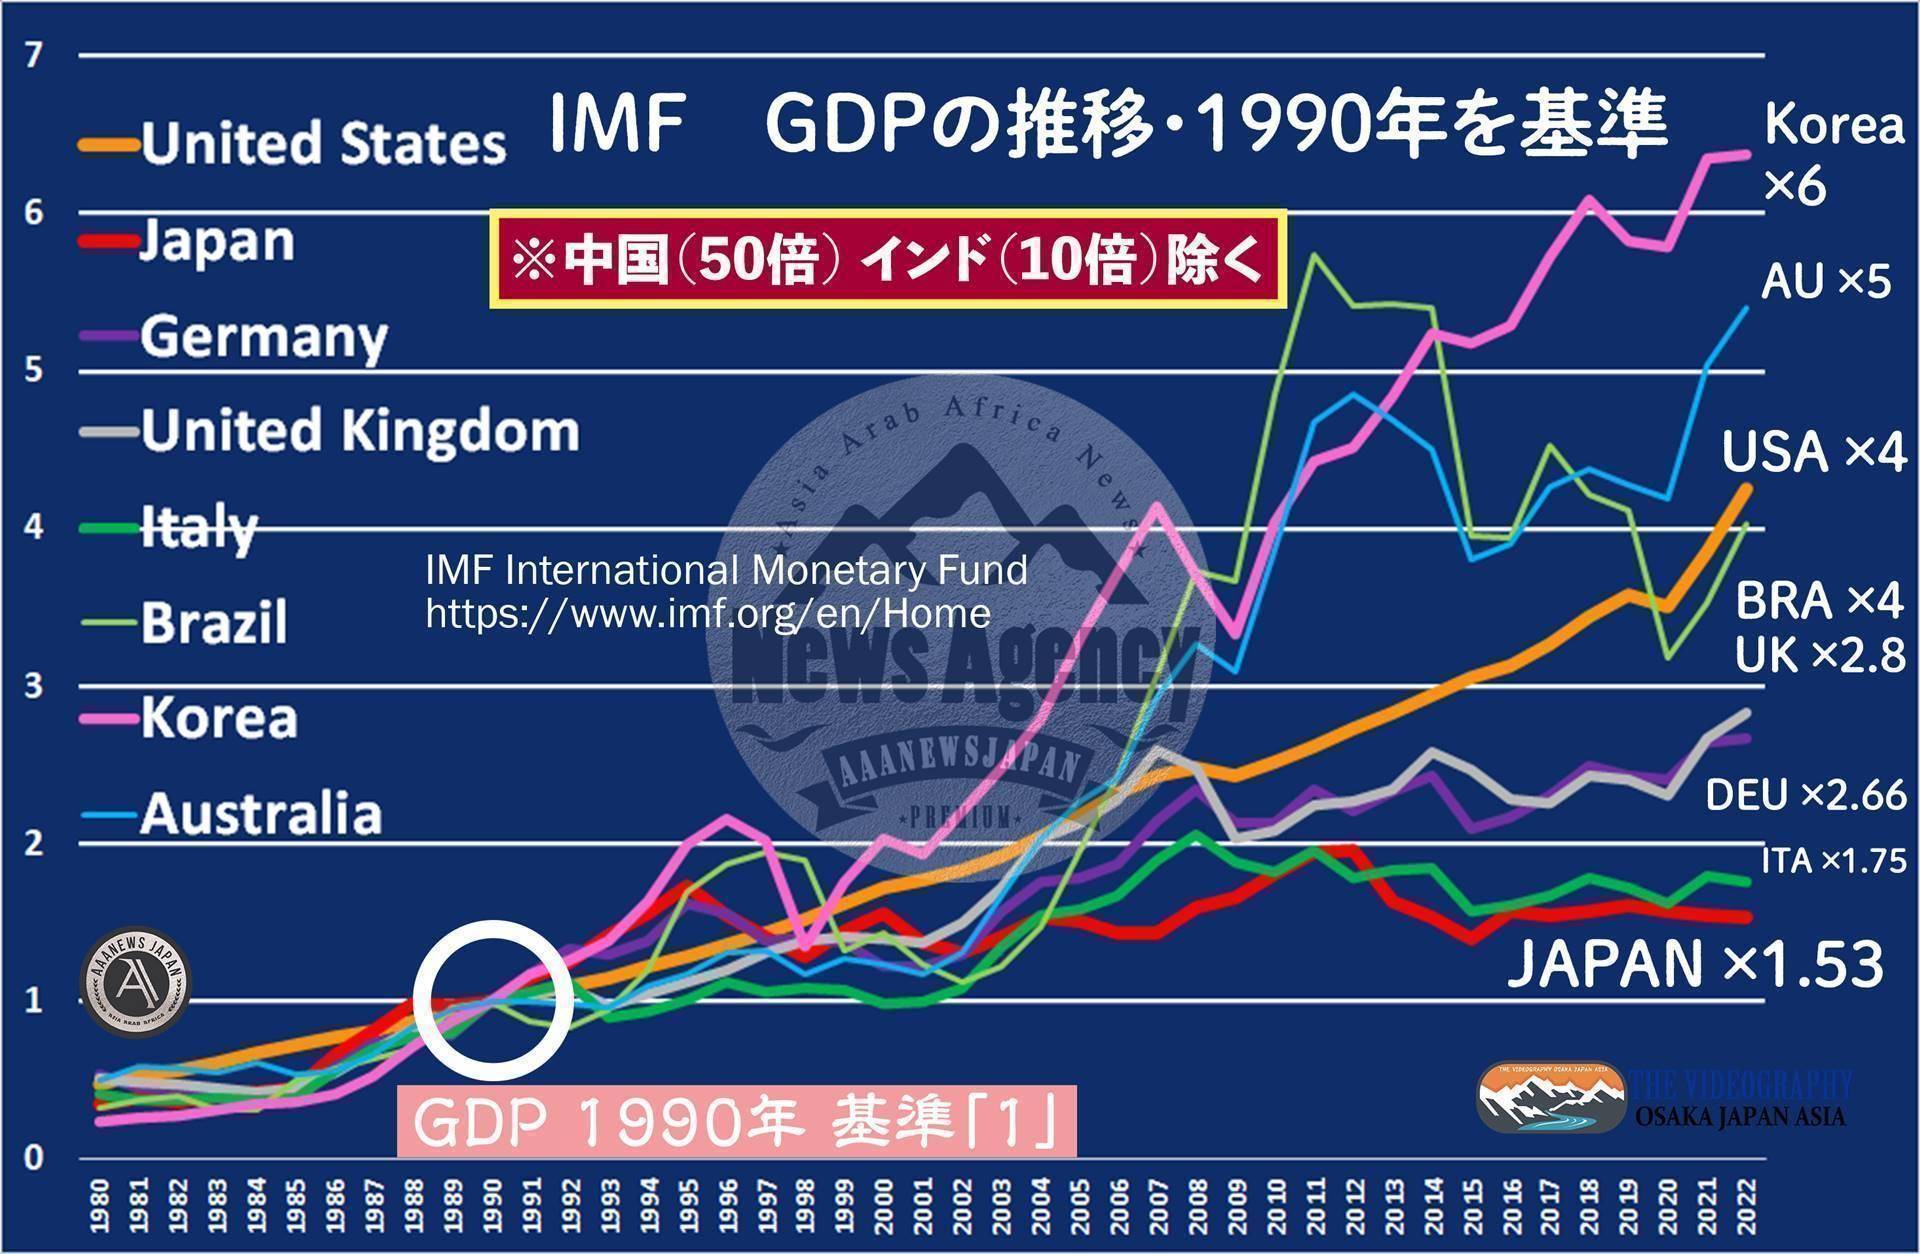 【各国個別のGDP成長推移 1990年を基準に 2022年の数値】 中国 50倍 インド 10.8倍 韓国 6.36倍 アメリカ 4.25倍 イギリス 2.82倍 ドイツ 2.66倍 イタリア 1.75倍 日本 1.53倍 他国は30年でGDPを倍以上に増やしているが、日本は1.53倍（ドルベース）の成長